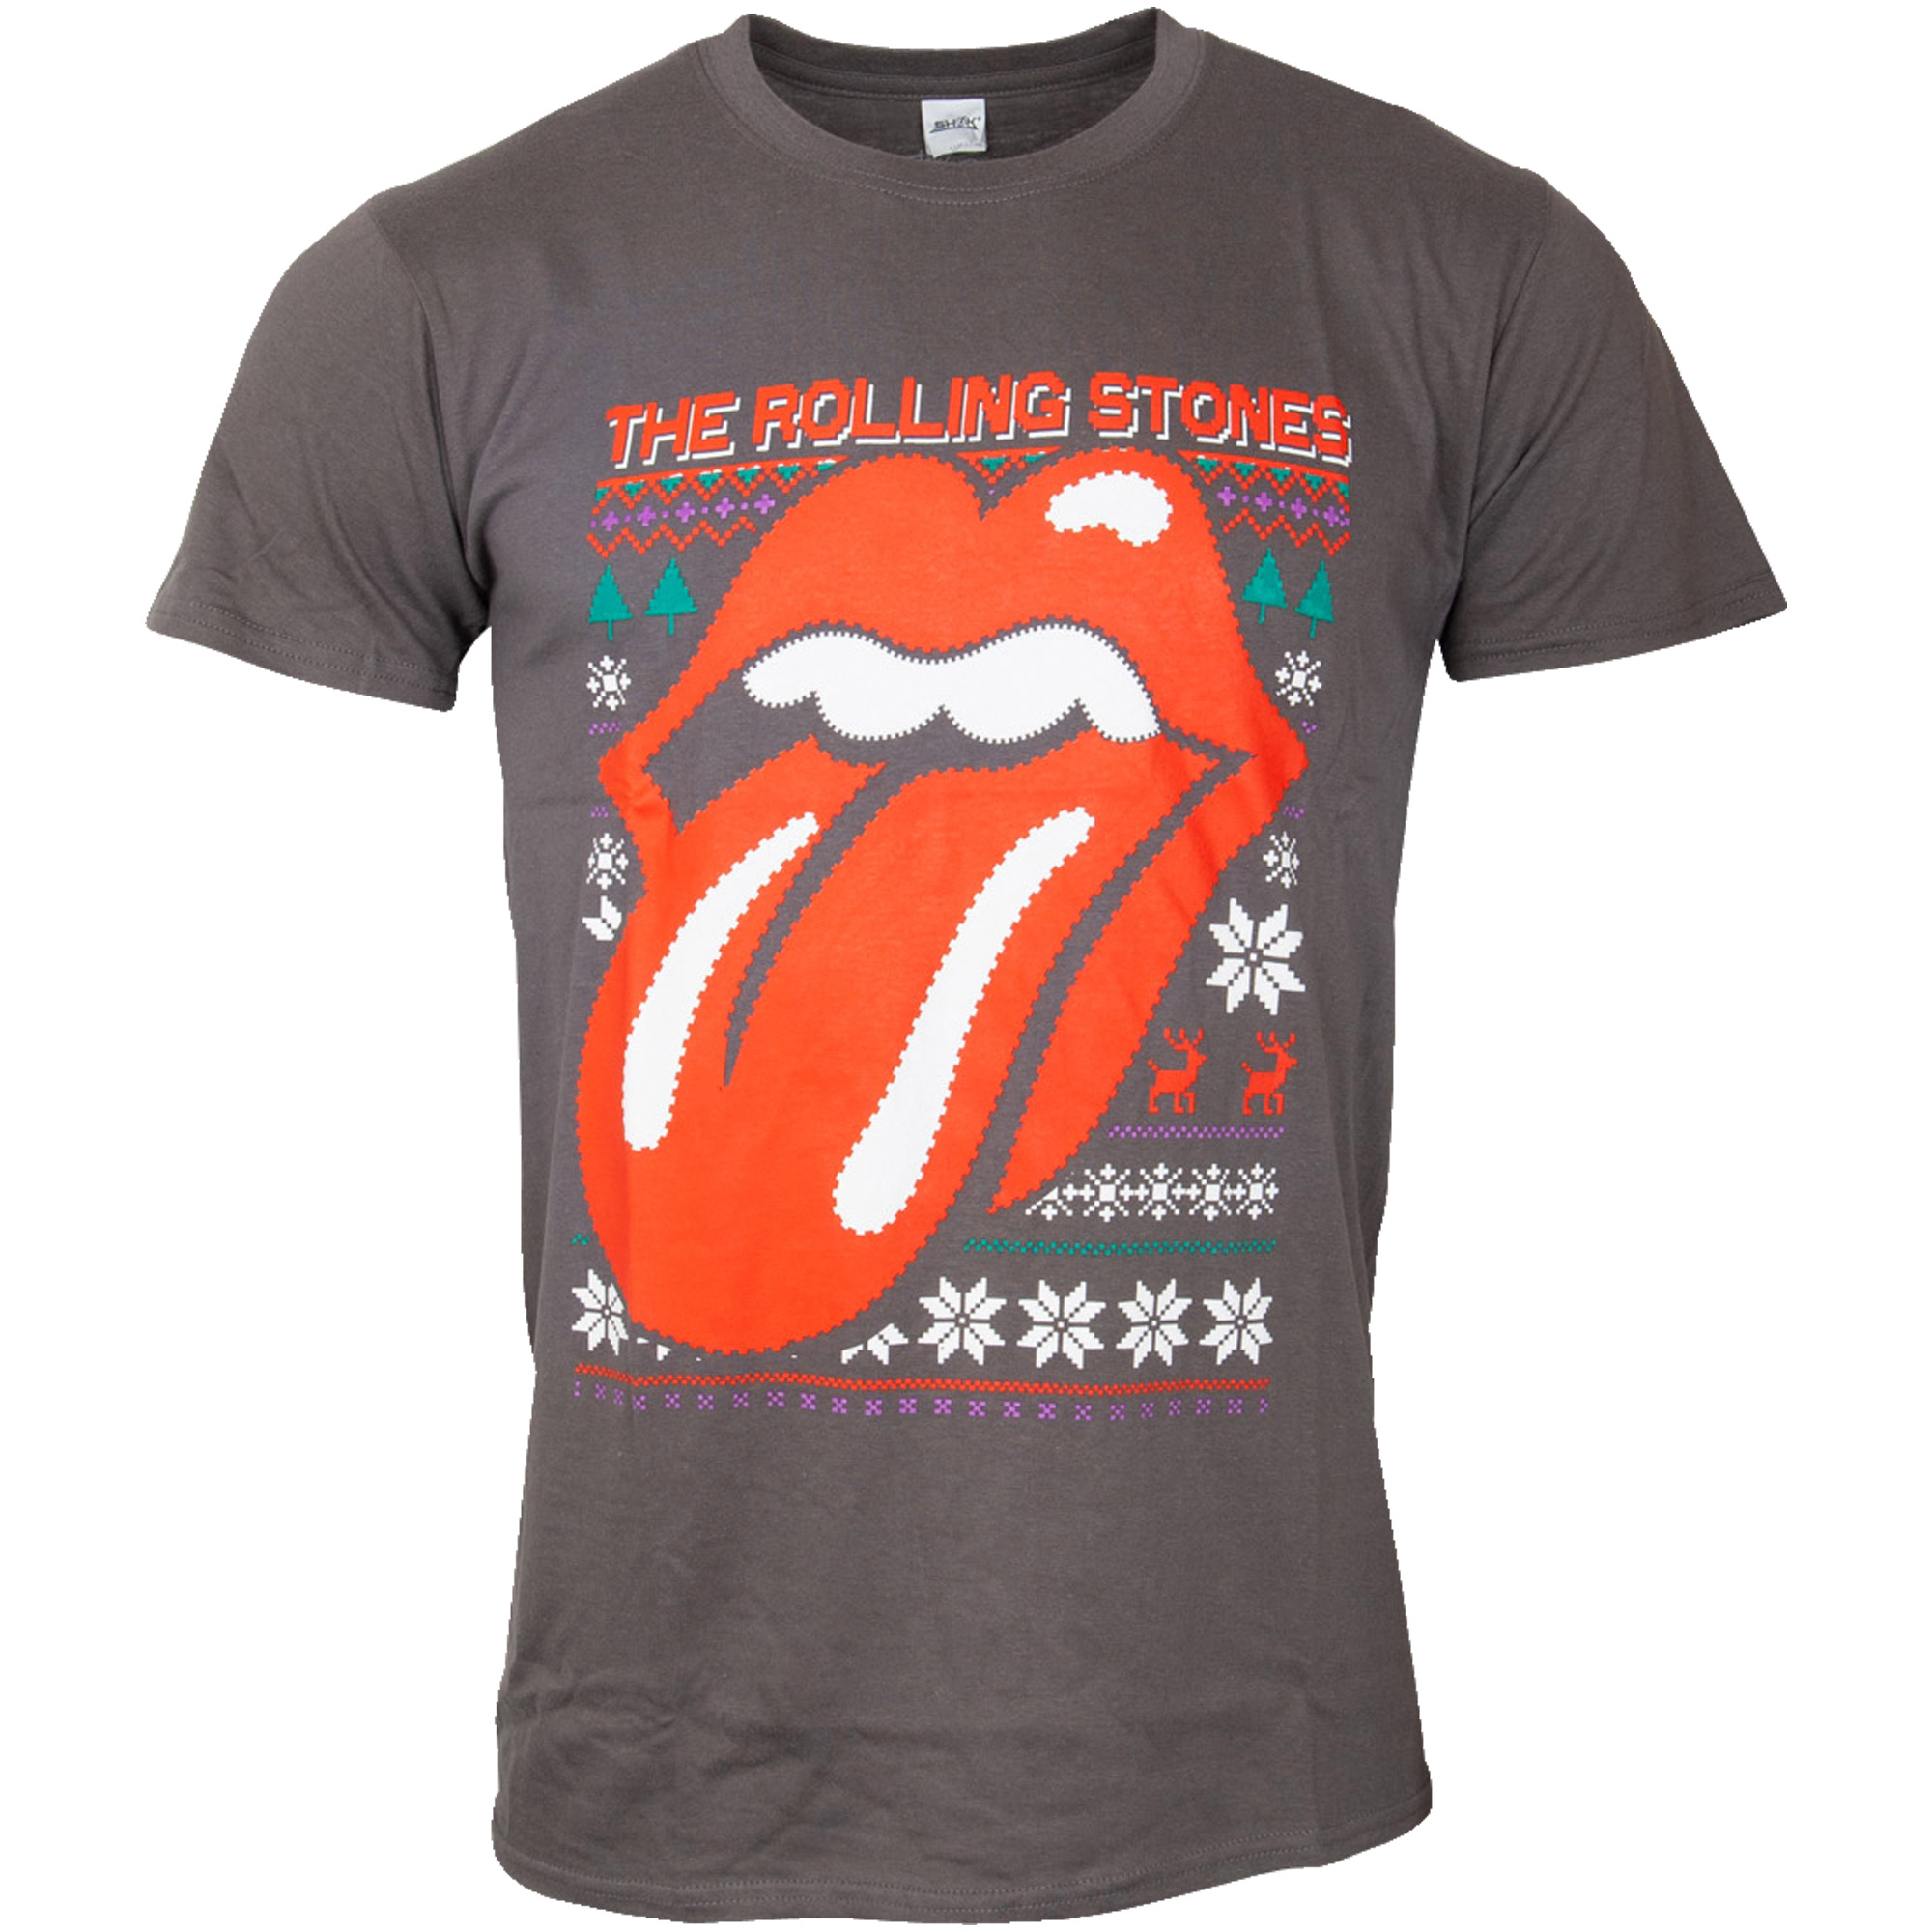 The Rolling Stones - T-Shirt Cosmic Christmas - grau